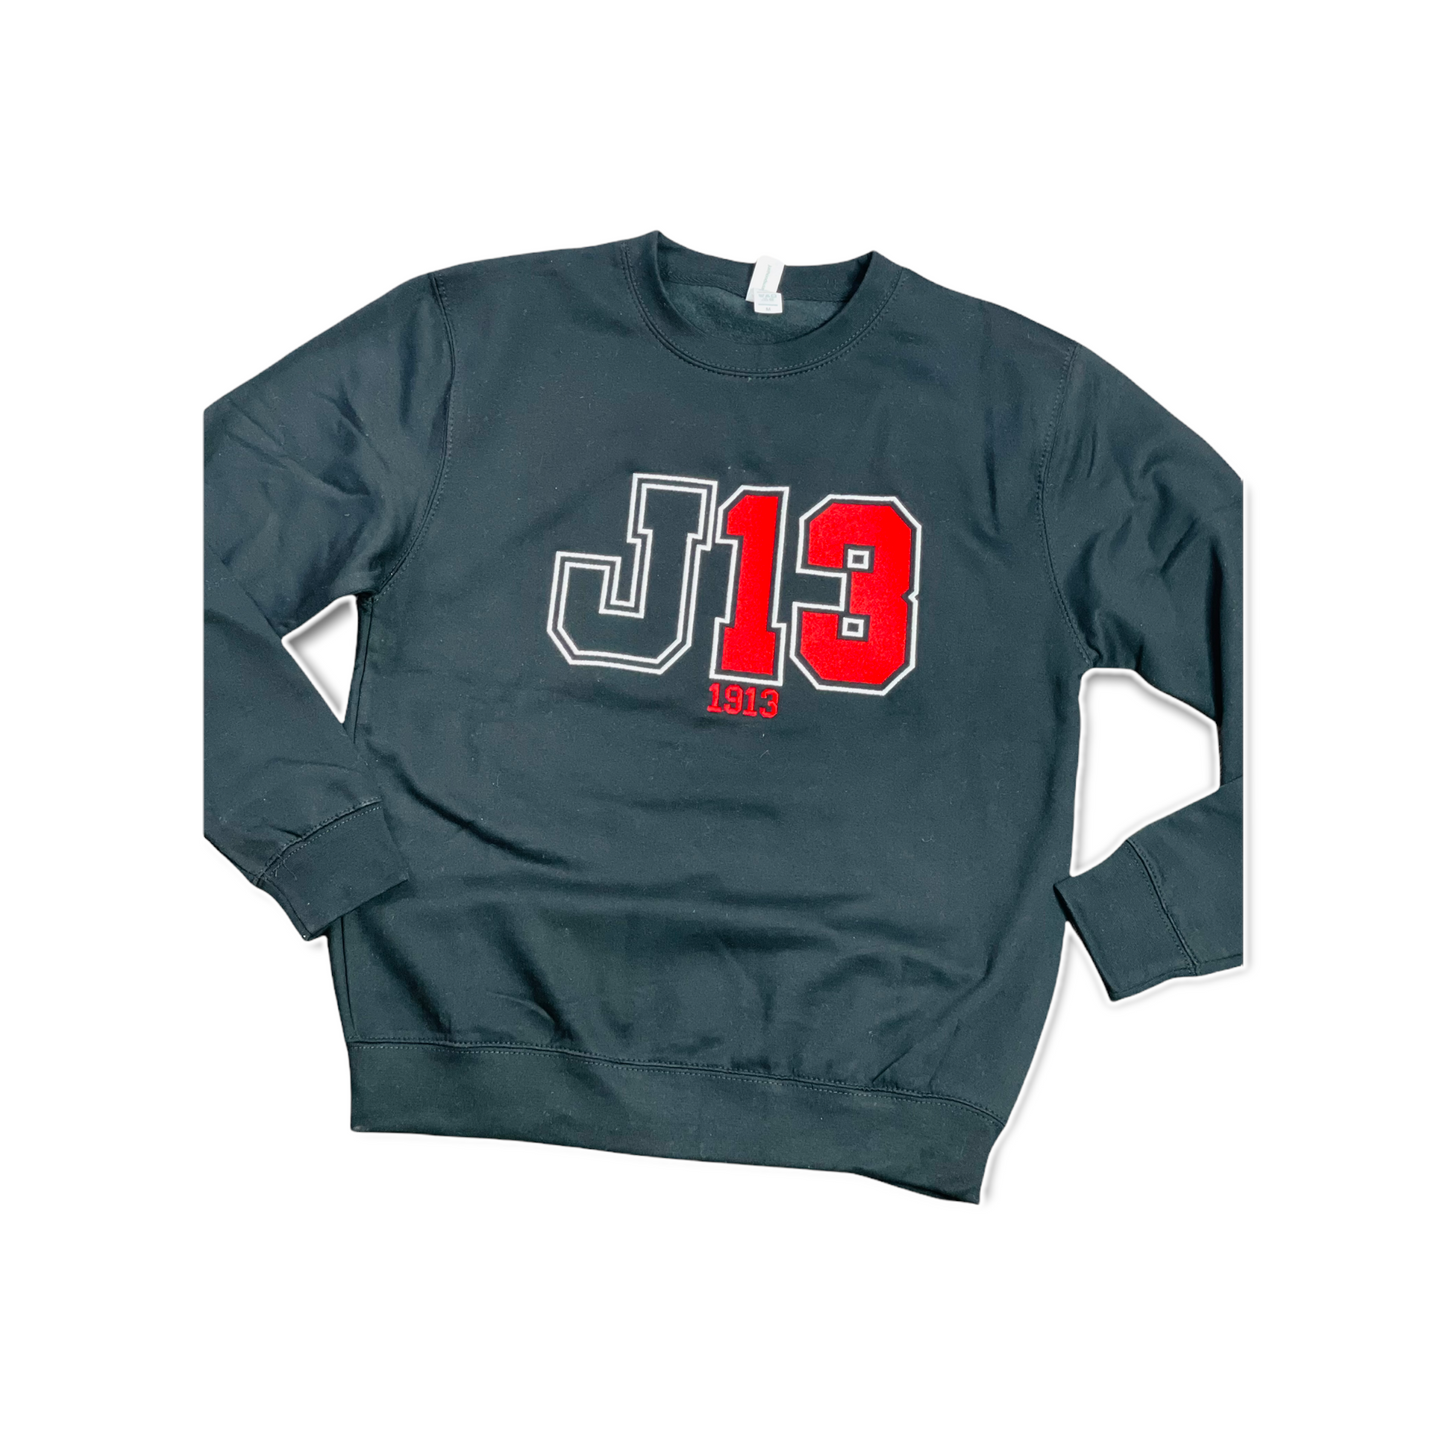 Another J13  Sweatshirt